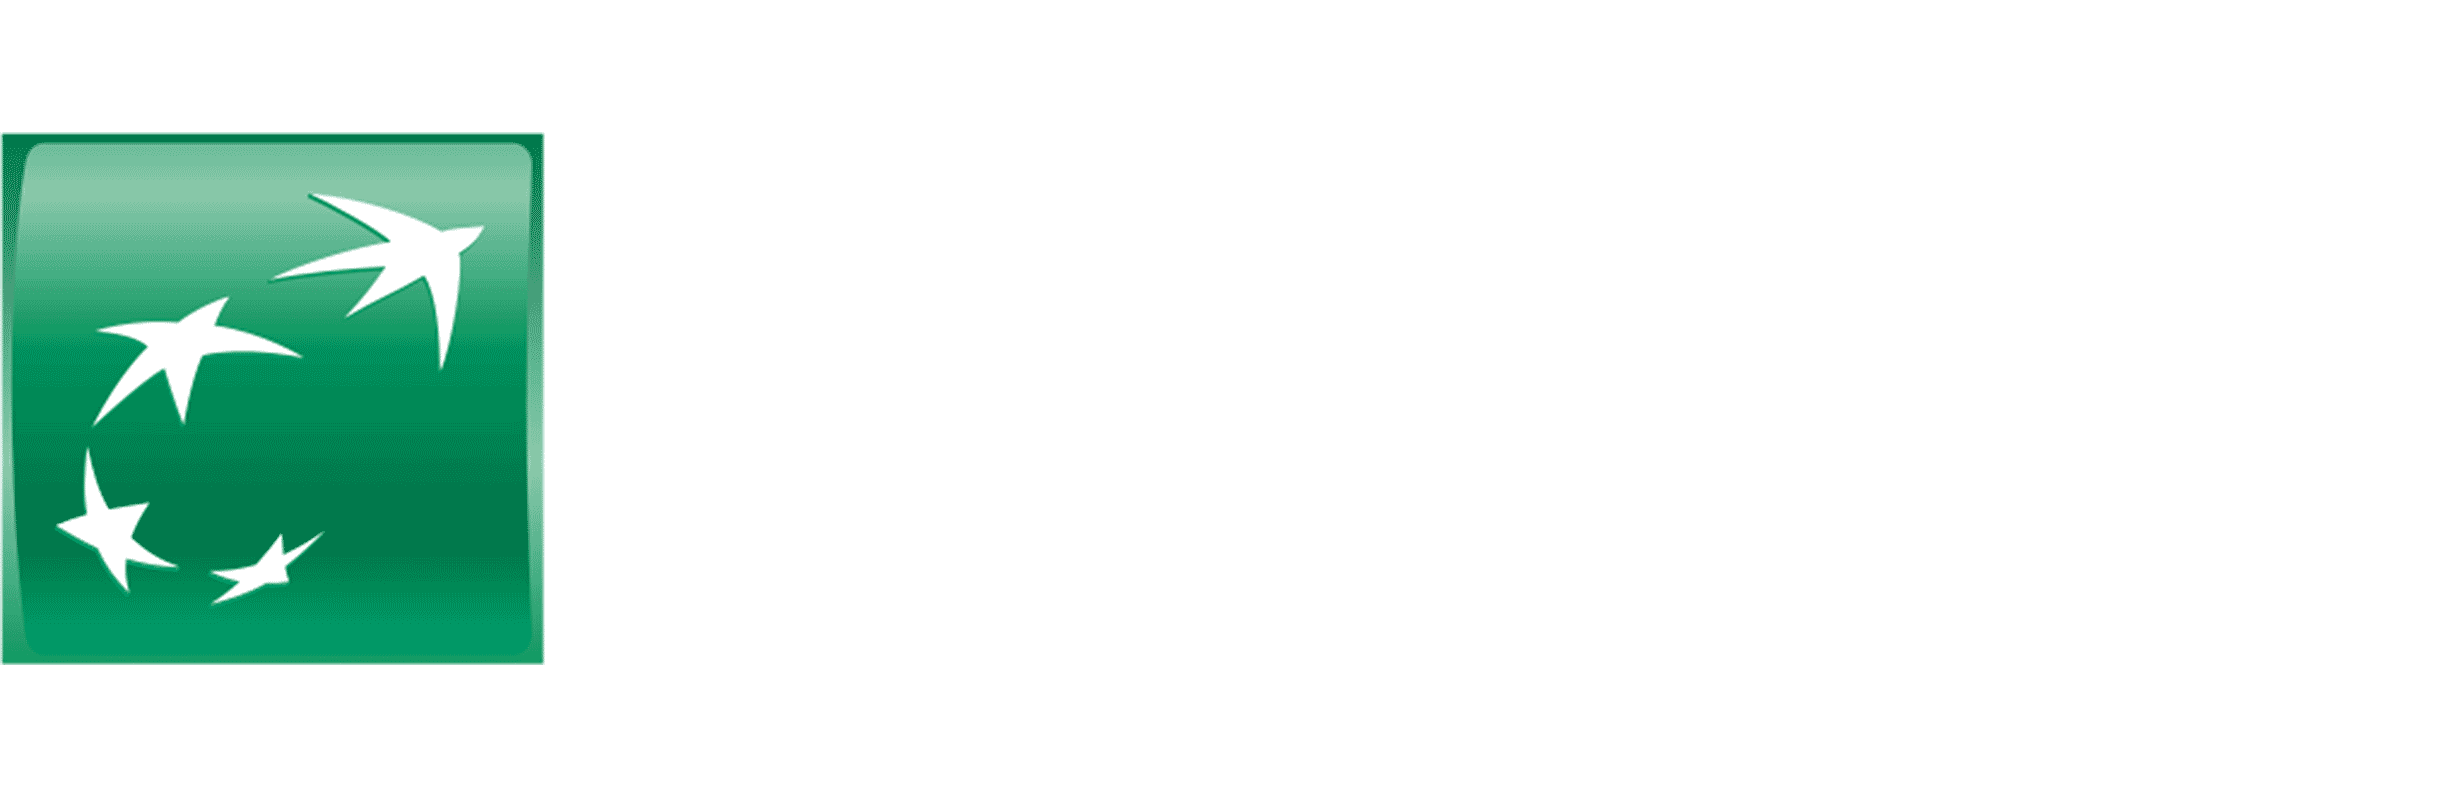 BNP Paribas Logo - Managers Convention Paribas • ELEPHANT